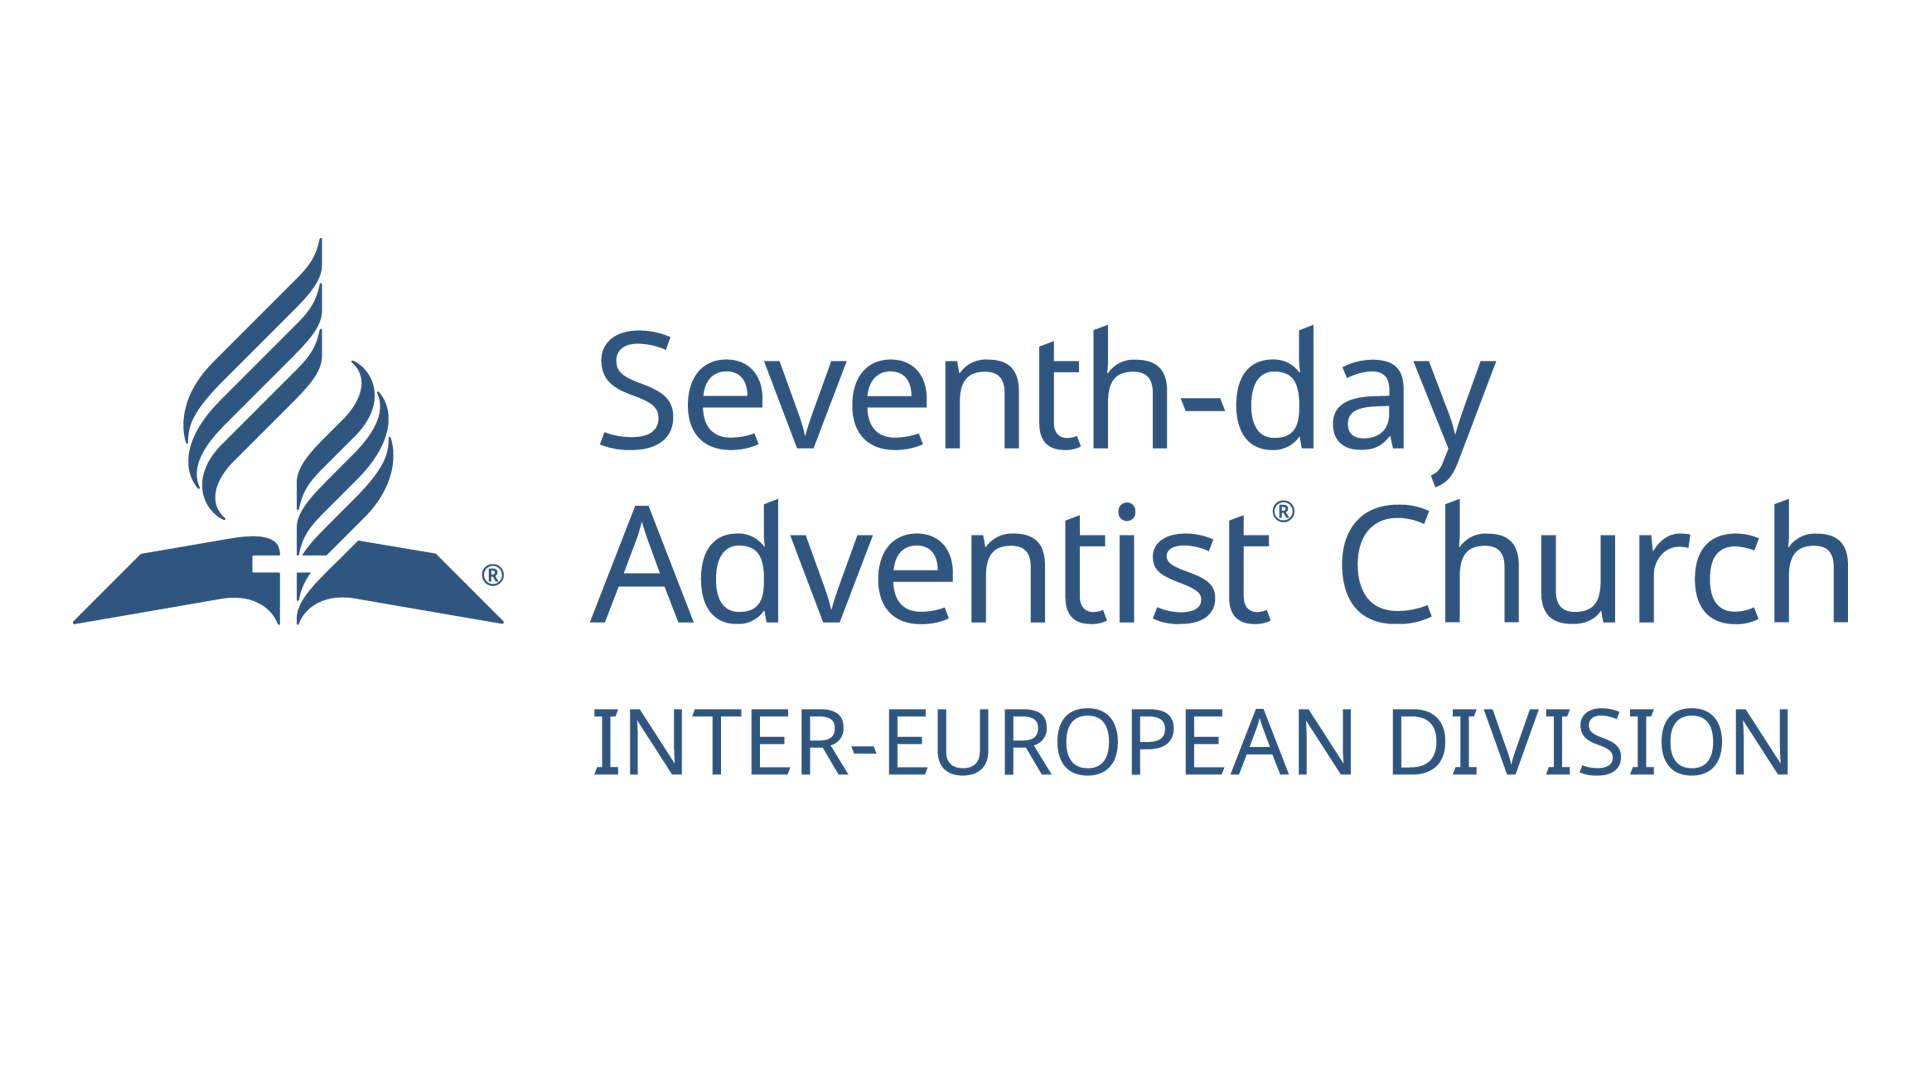 Posicionamento da administração da Divisão Intereuropeia da Igreja Adventista do Sétimo Dia em relação às declarações de Saša Gunjević